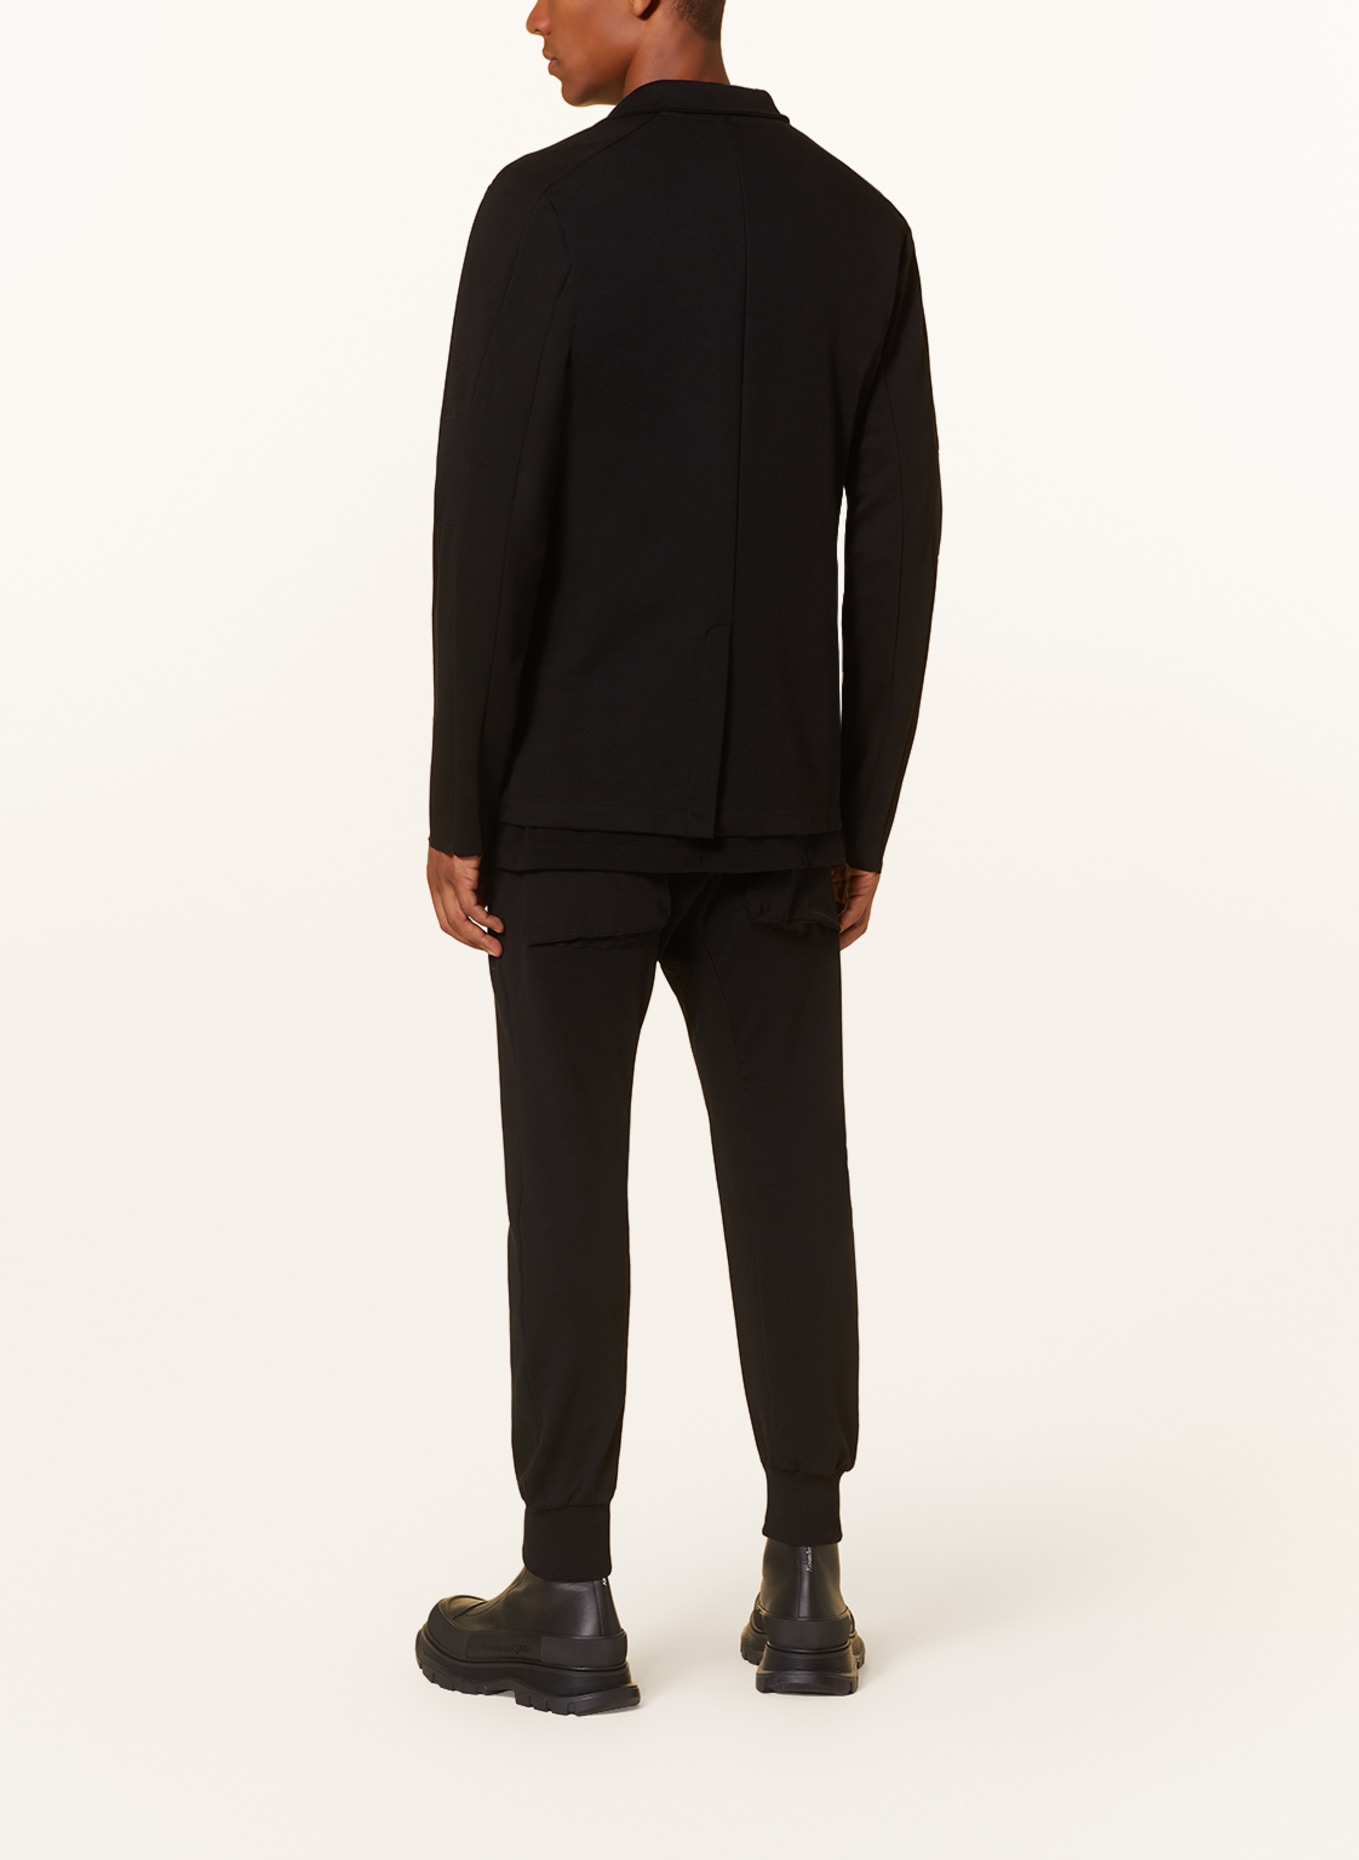 thom/krom Jersey jacket extra slim fit, Color: BLACK (Image 3)